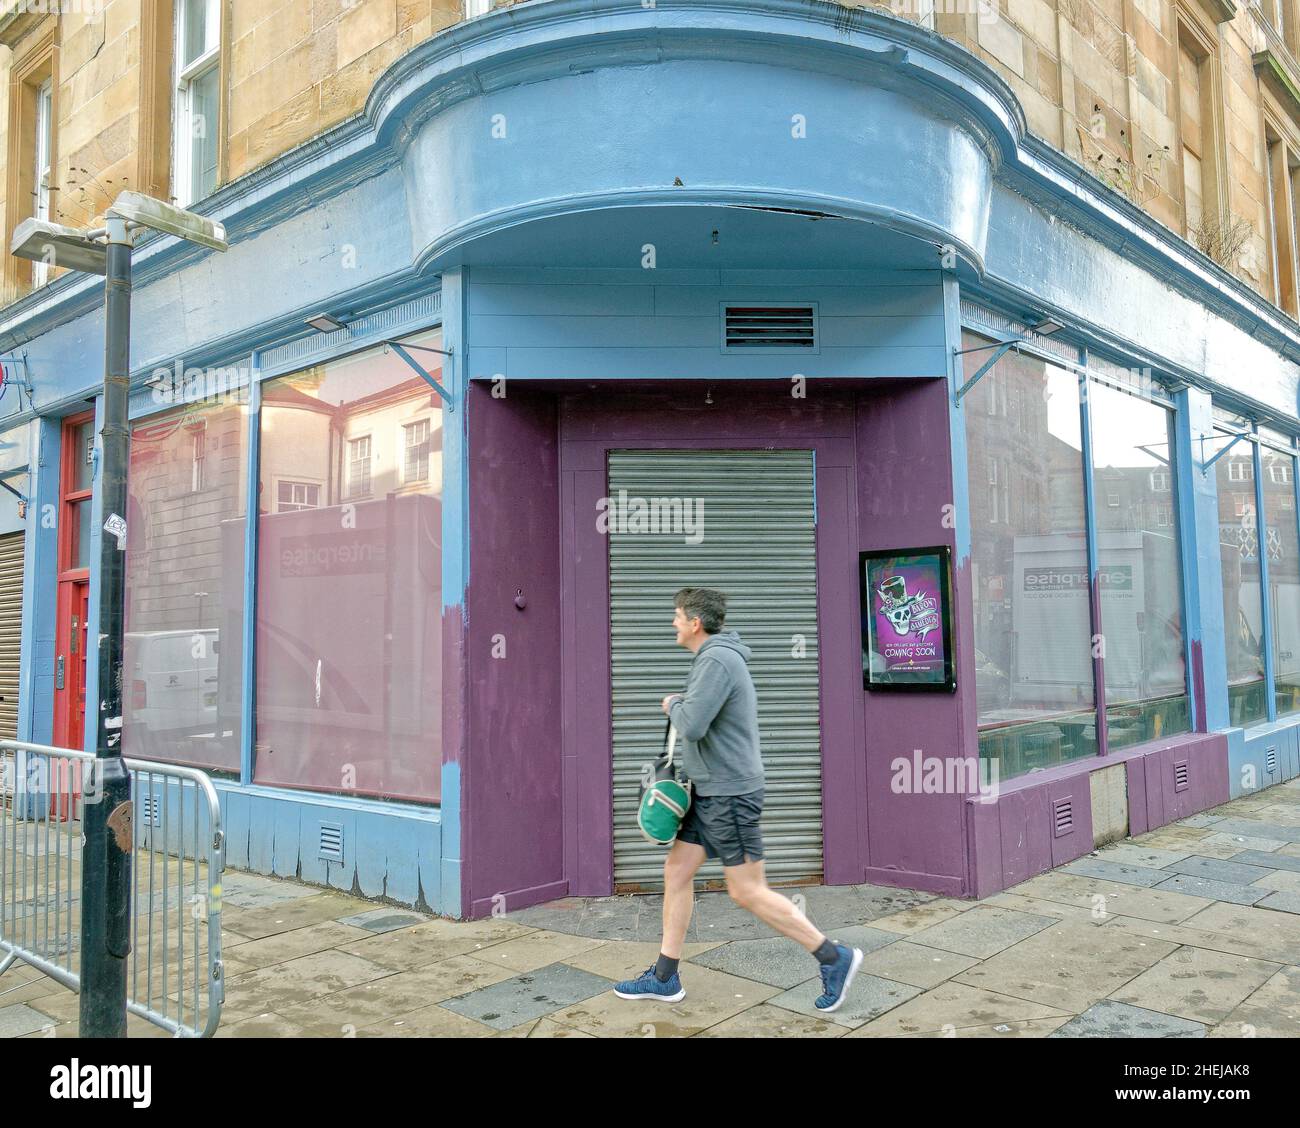 Glasgow, Écosse, Royaume-Uni.11th janvier 2022.Le nouveau film Batgirl a été mis en place avec les fermetures de routes, les façades des magasins étant construites avec le bâtiment art déco et la croix mercat avec des graffitis utilisés pour communiquer la dystopie.Crédit : gerard ferry/Alay Live News Banque D'Images